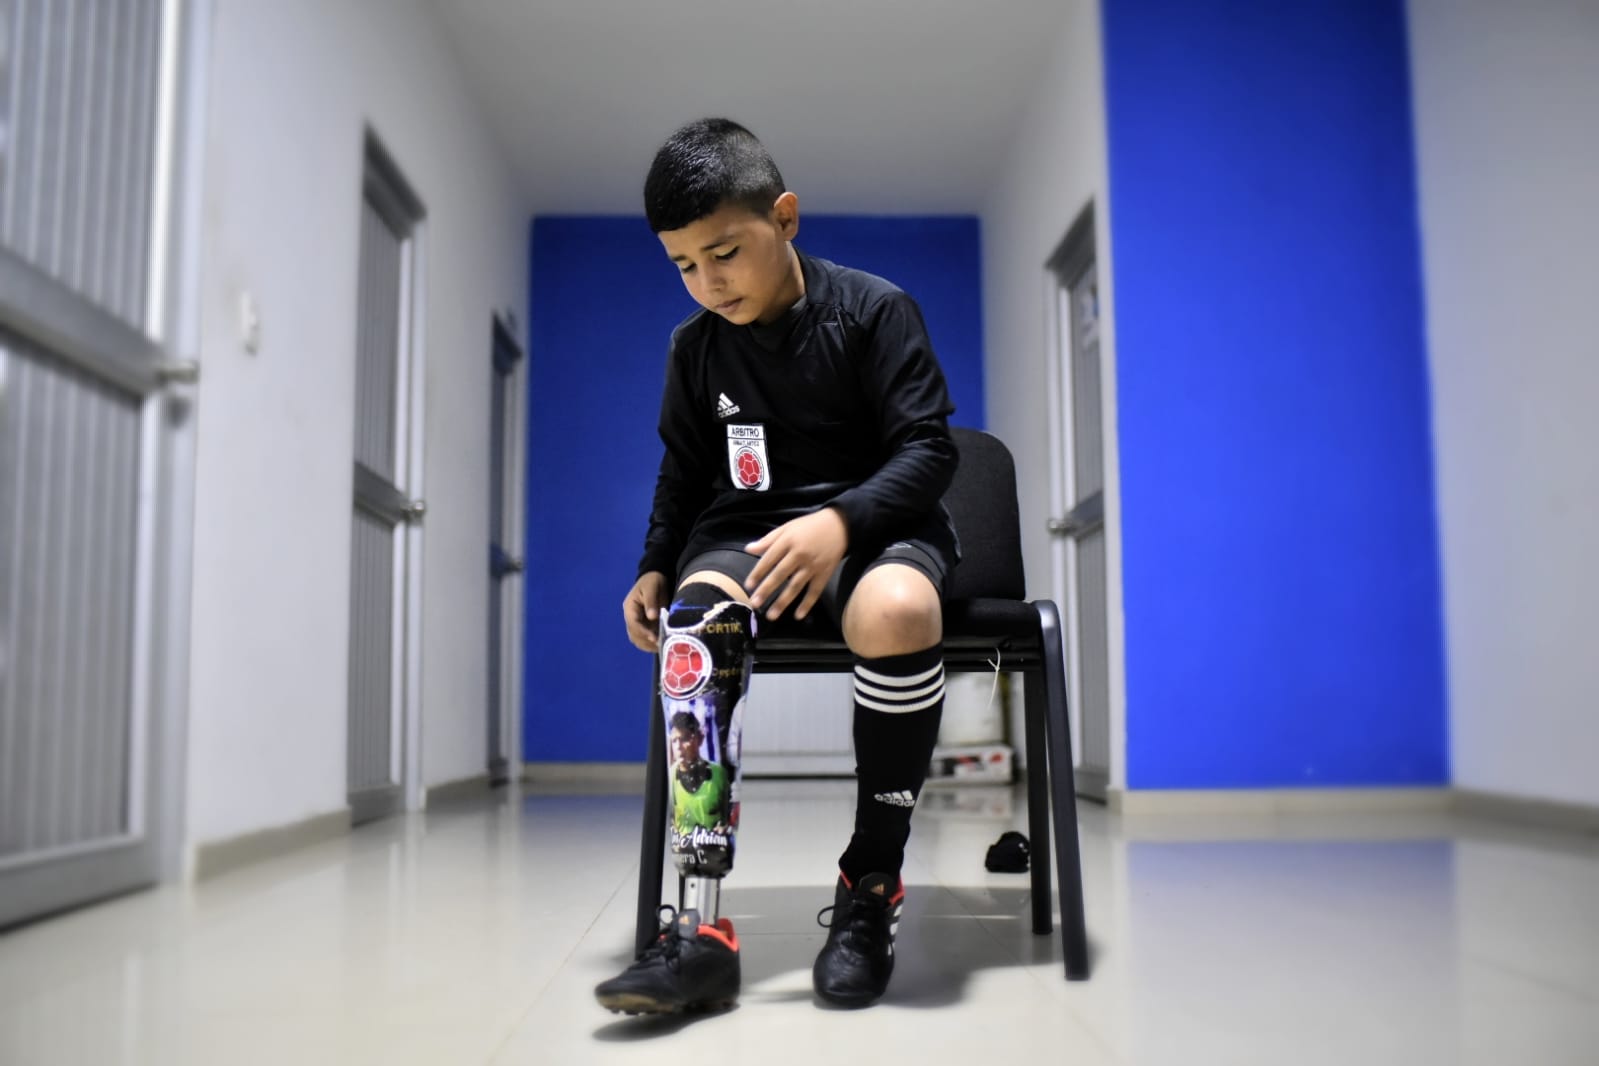 Jesús Adrián, el niño árbitro que le sacó tarjeta roja a la discapacidad |  Zona Cero